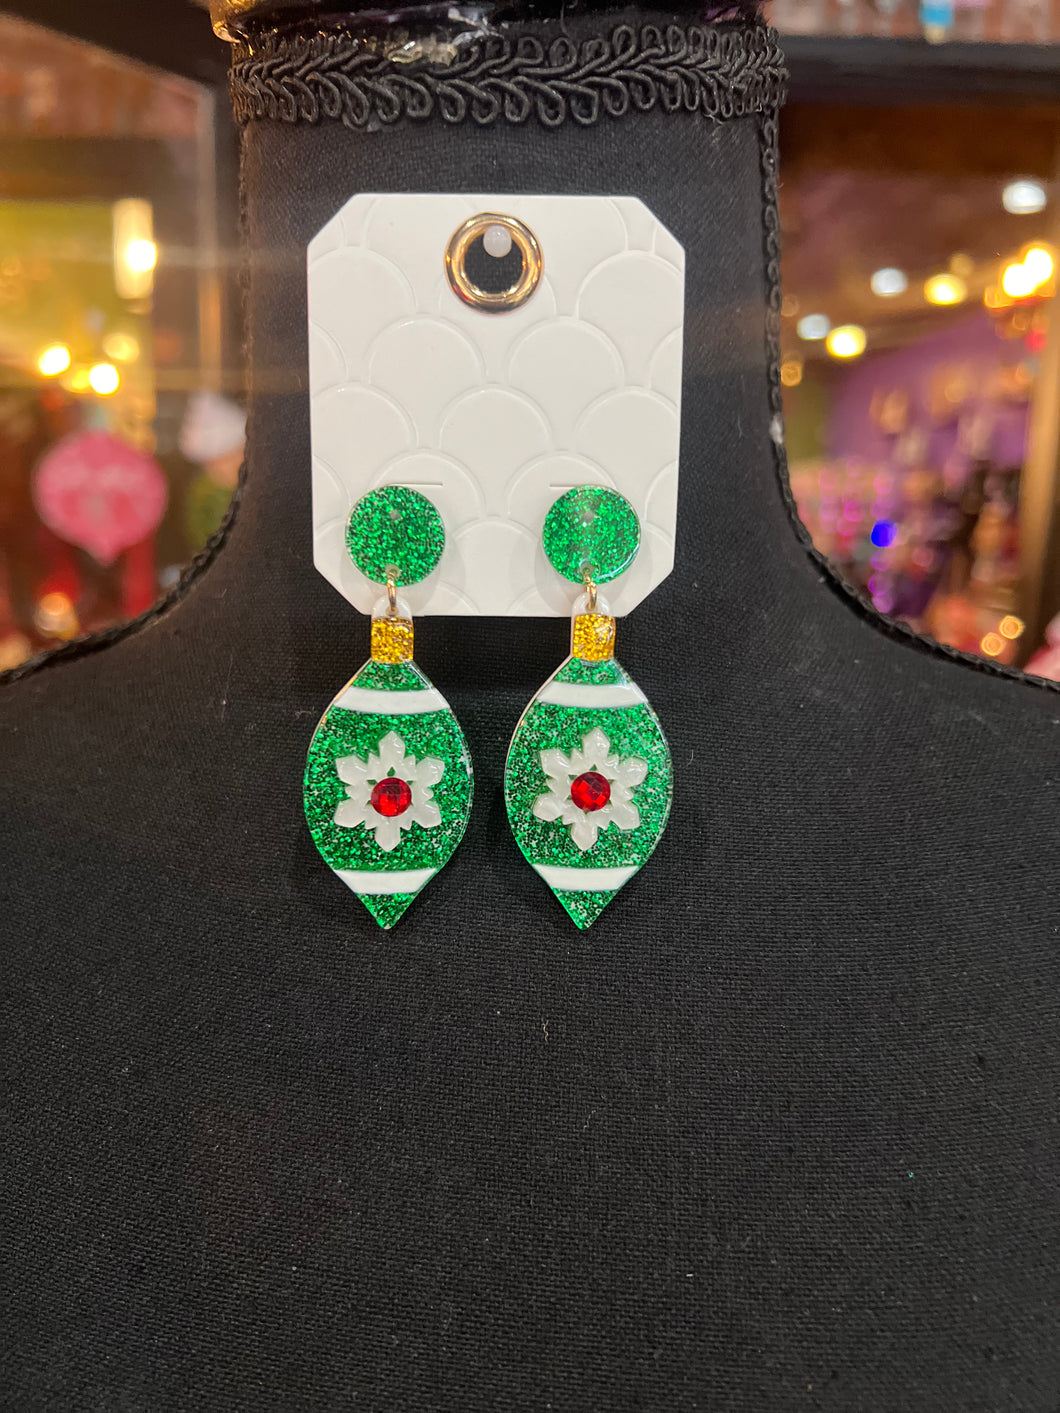 Green Glitter Christmas Ornament earrings